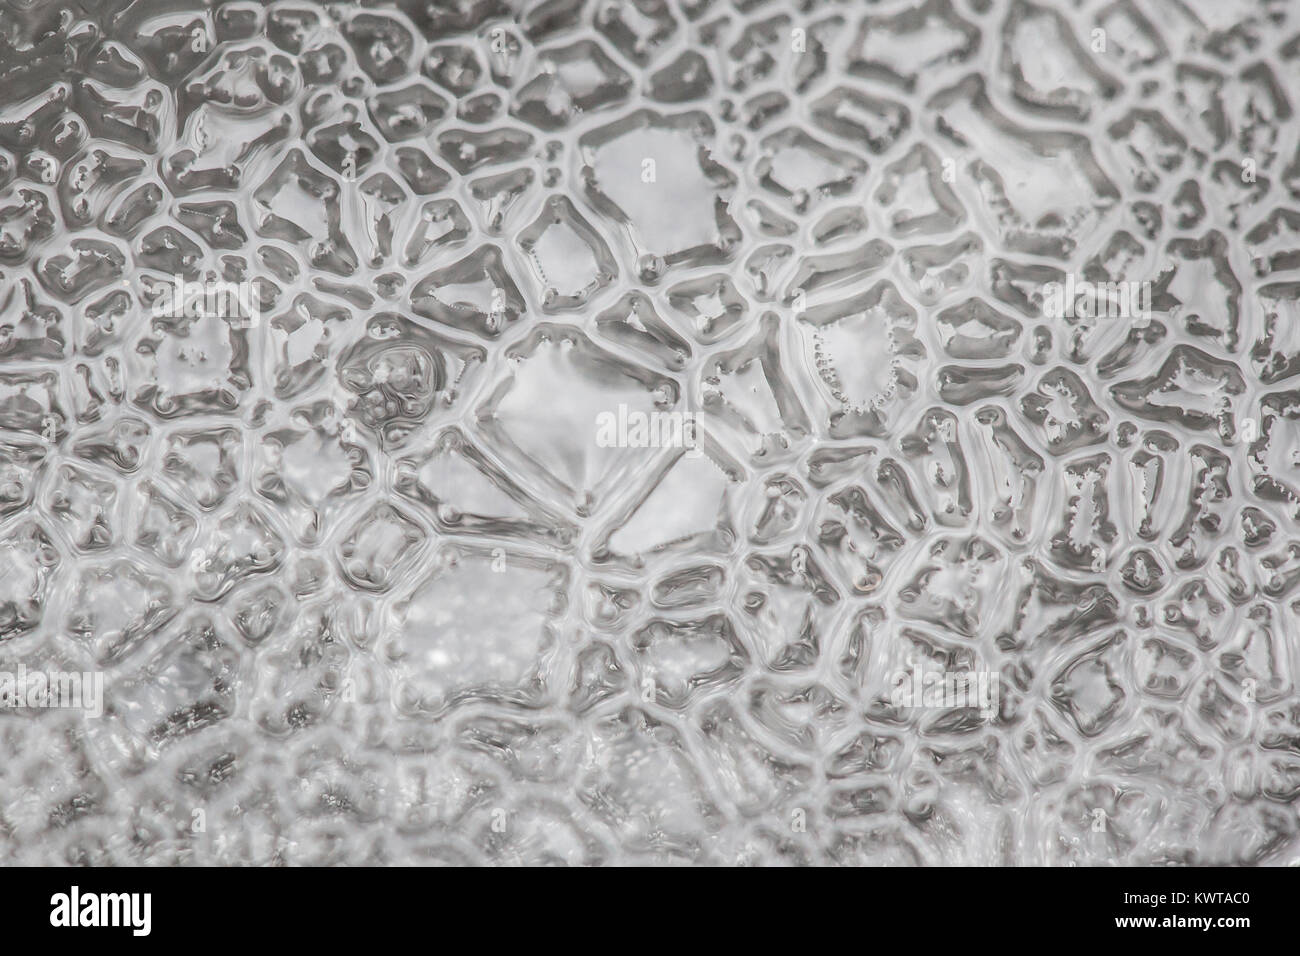 Abstract intricate chiudere i pattern su un pezzo di ghiaccio. Foto Stock